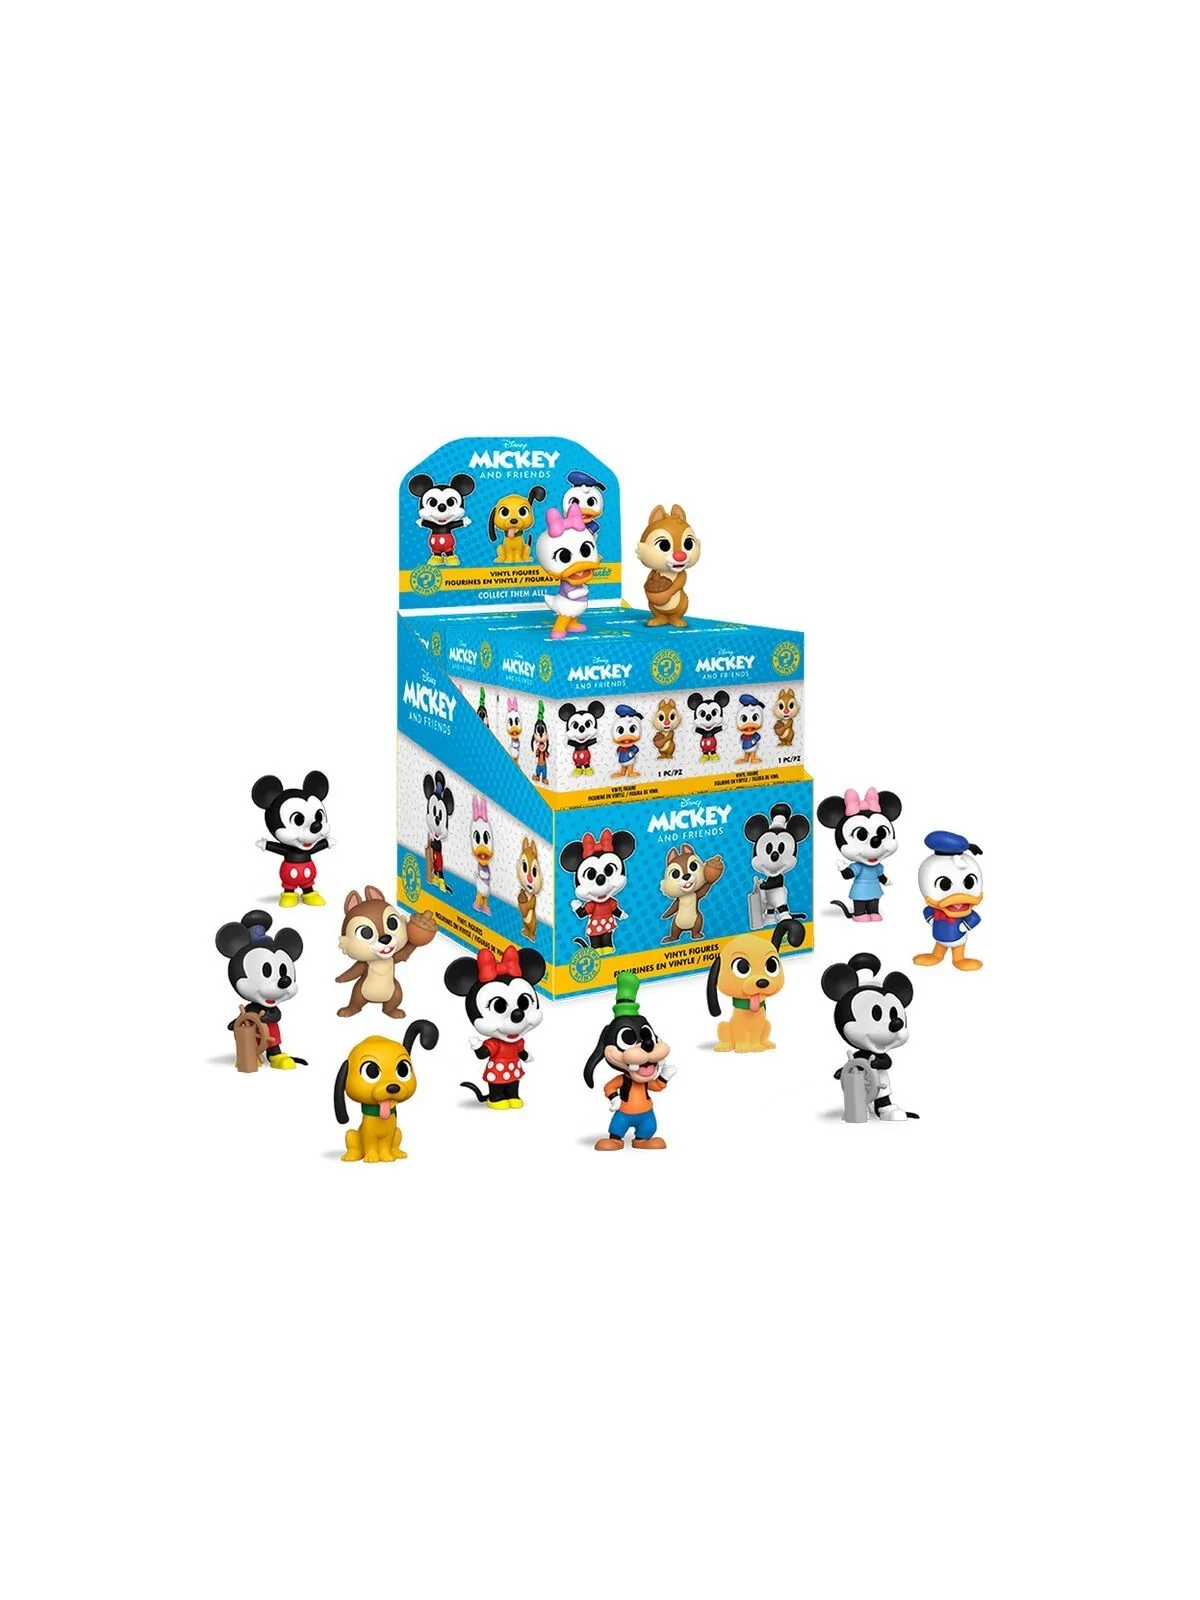 Comprar Mystery Minis Disney Classics barato al mejor precio 9,95 € de